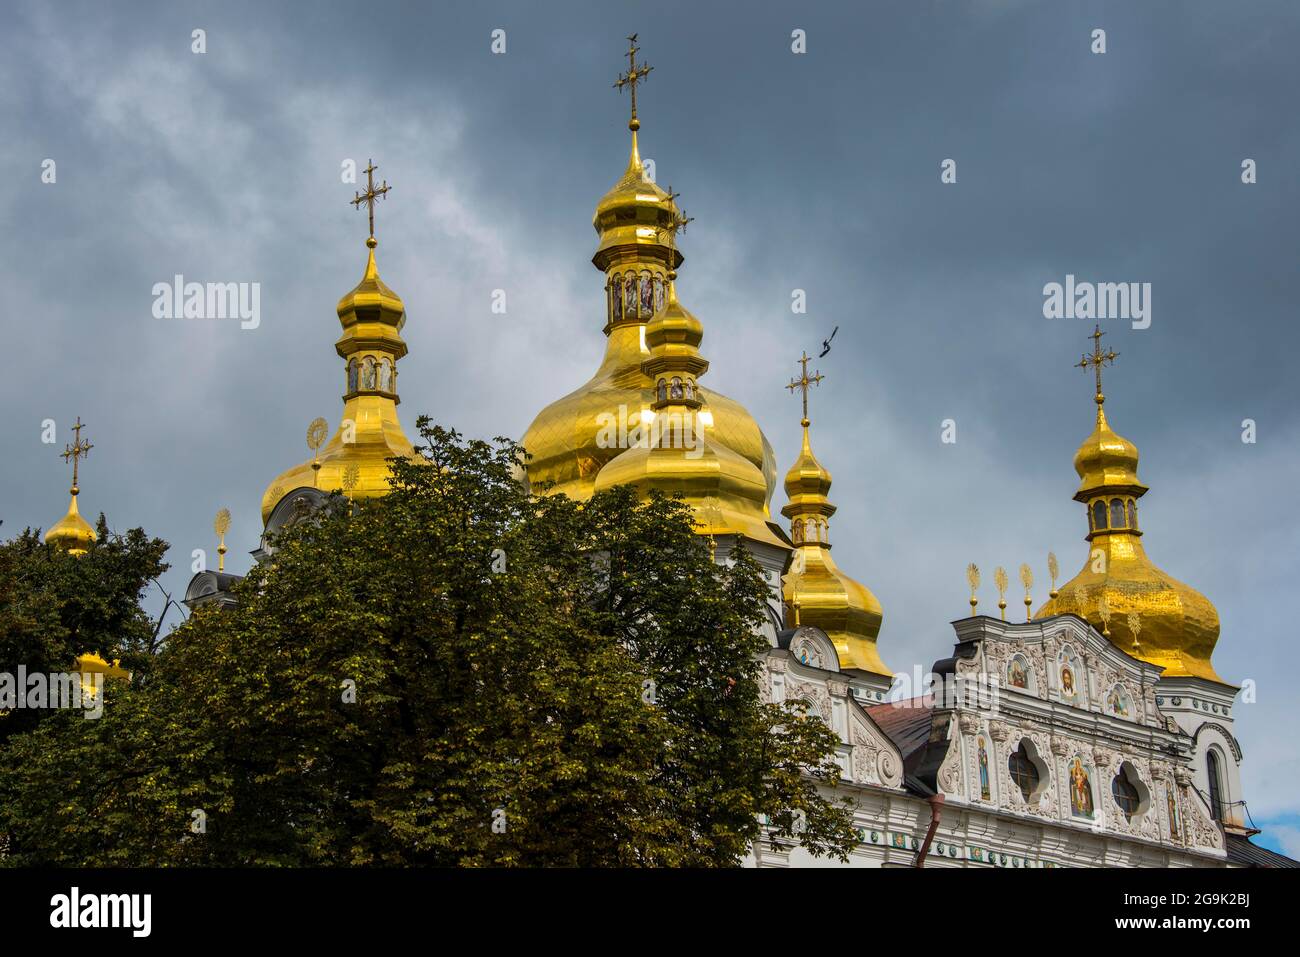 Die goldenen Kuppeln der Domition-Kathedrale im UNESCO-Weltkulturerbe sehen die Kievo-Pecherska Lavra, Kiew oder Kiew Hauptstadt der Ukraine Stockfoto